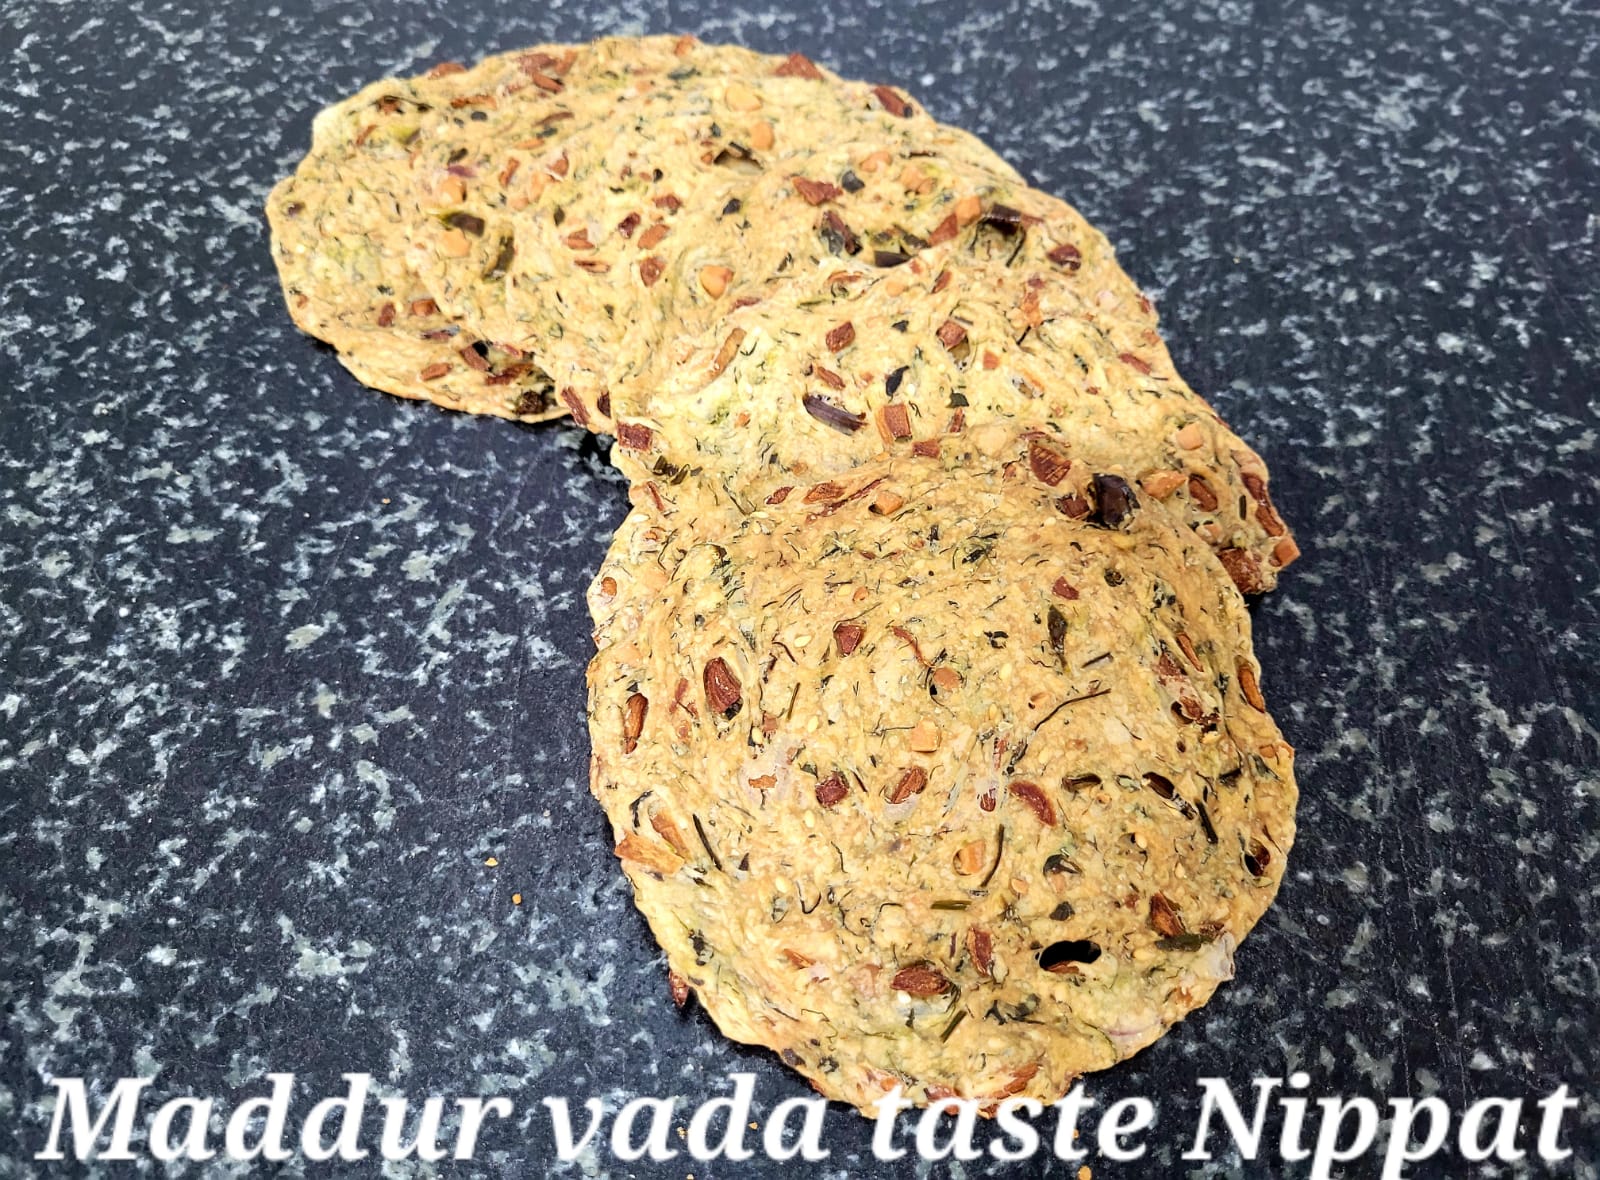 Maddur Vada Taste Nippat